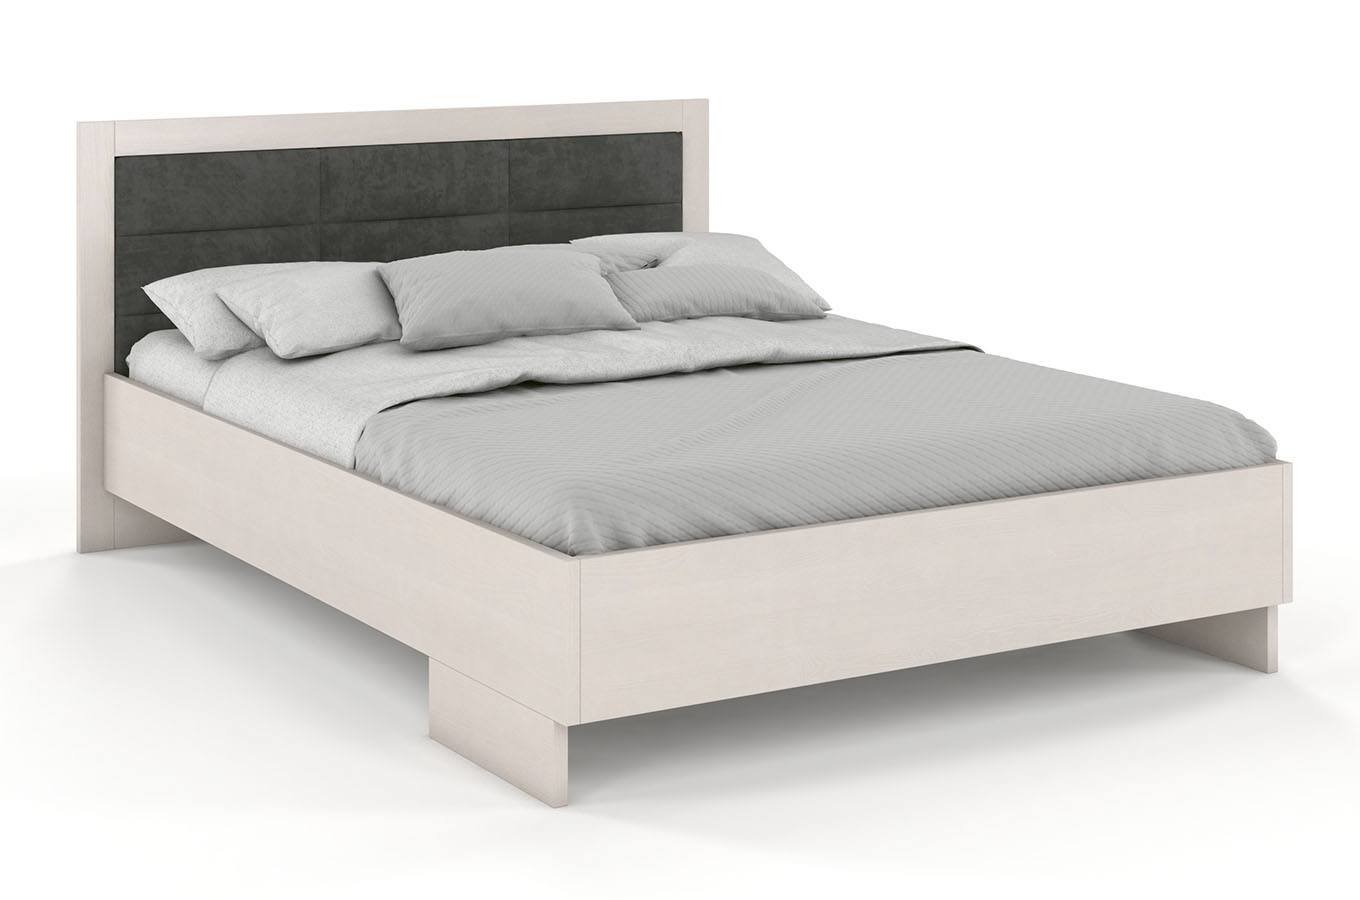 Dřevěná postel s čalouněným čelem Kalmar High borovice - bílá 160 x 200 cm, Casablanca 2302